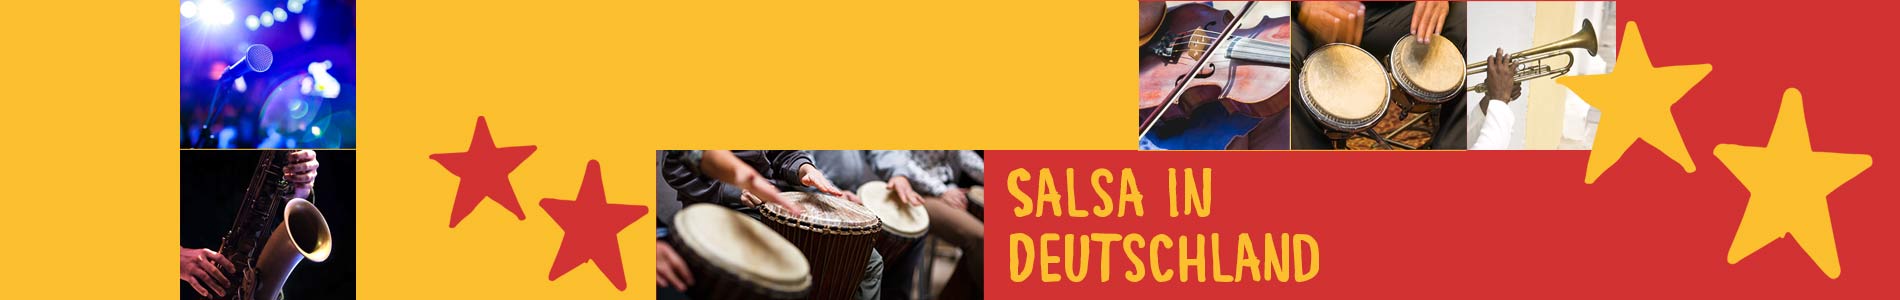 Salsa in Bornich – Salsa lernen und tanzen, Tanzkurse, Partys, Veranstaltungen